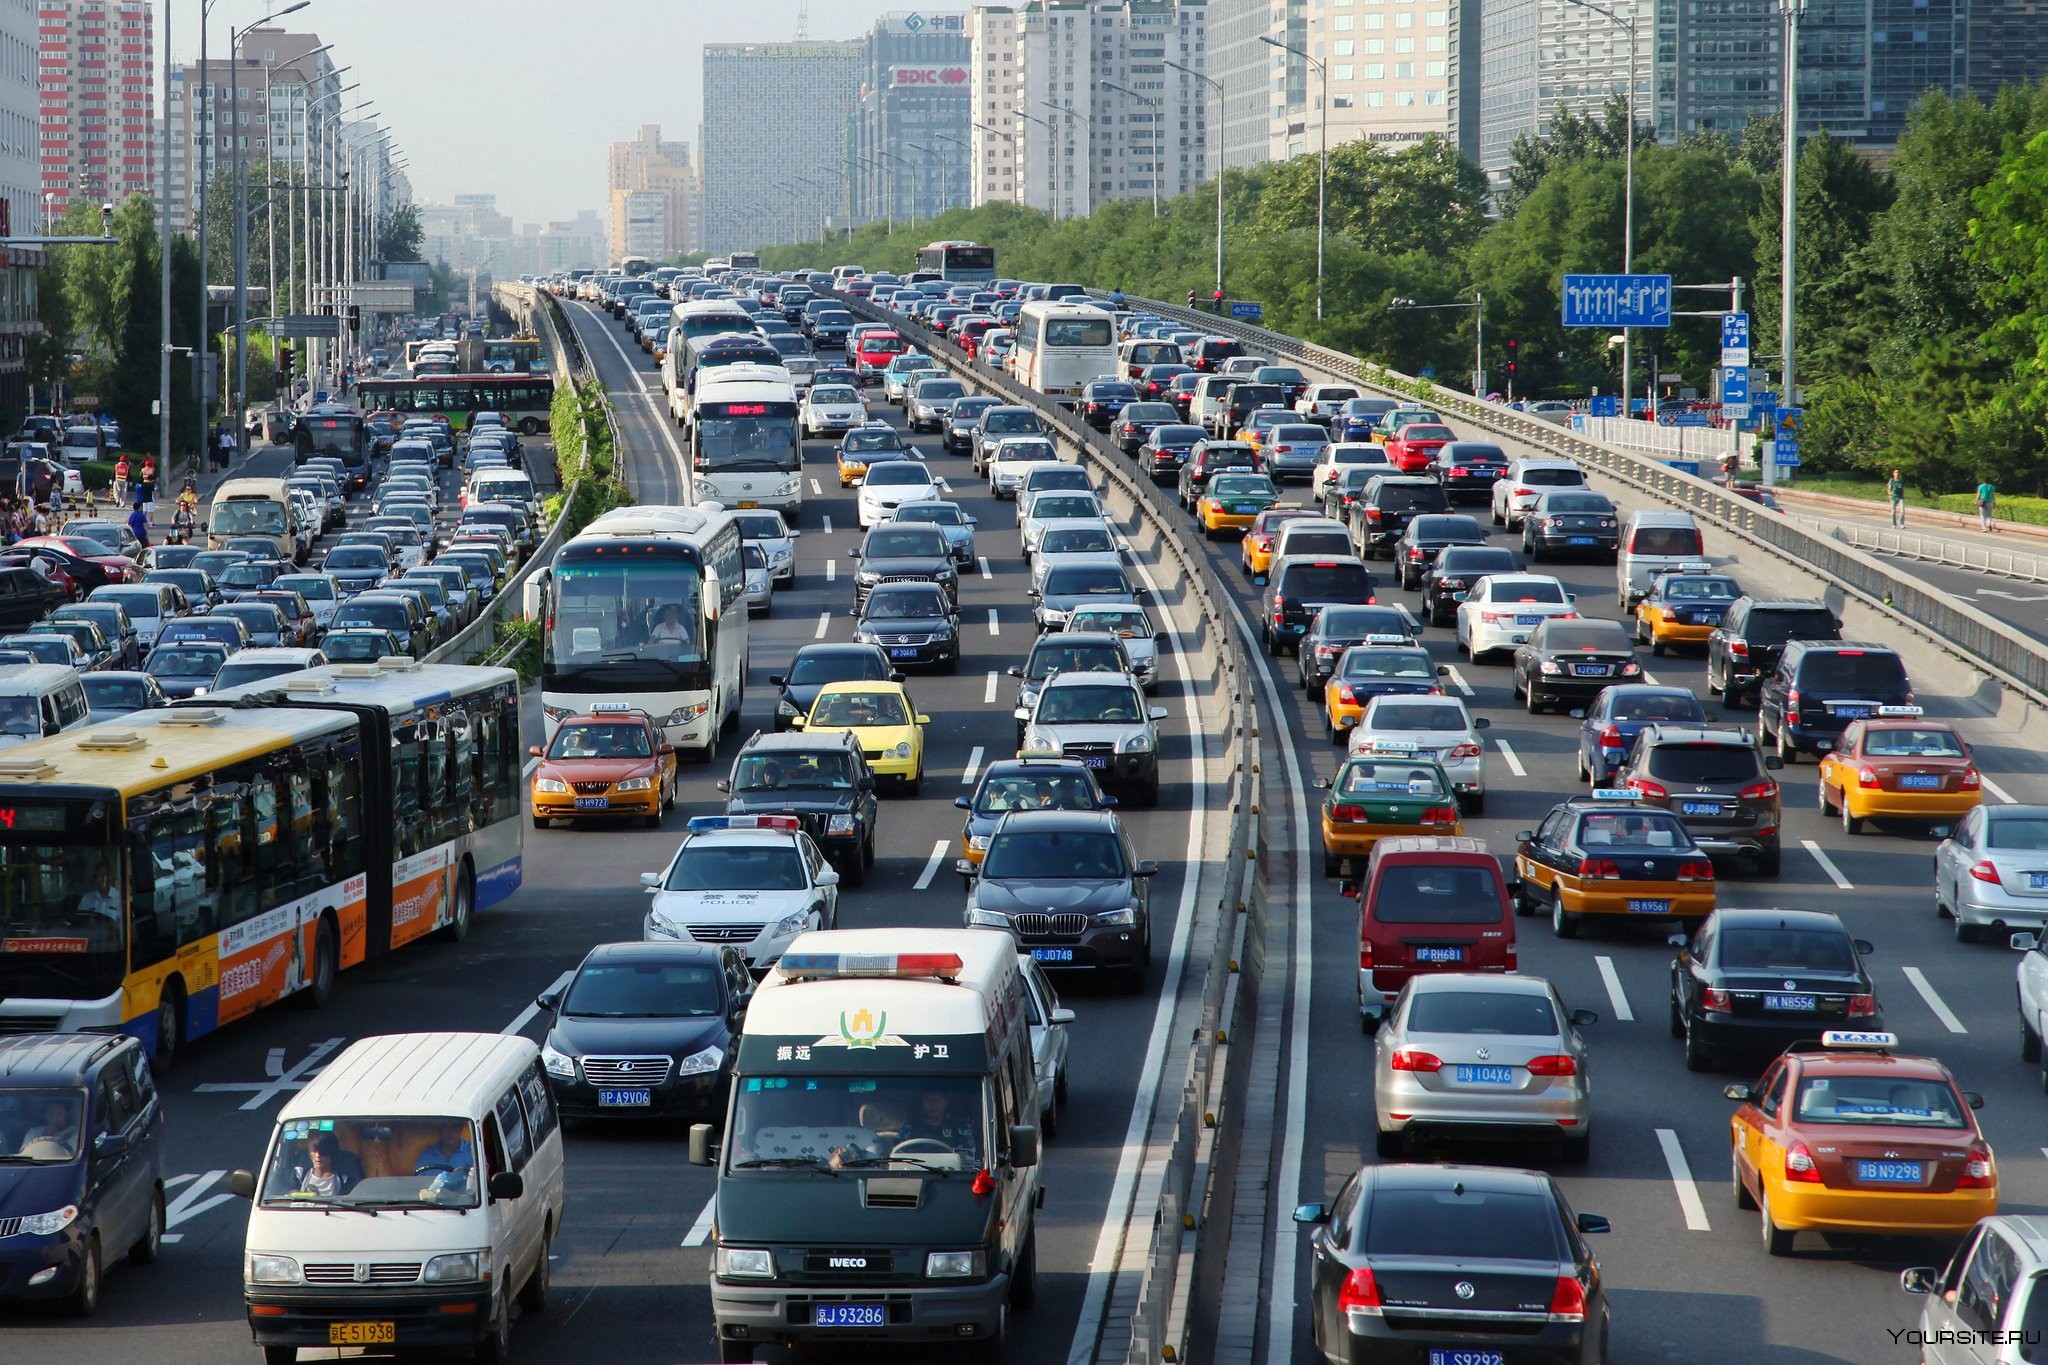 Автомобили и городская среда: влияние на качество воздуха и уровень шума.